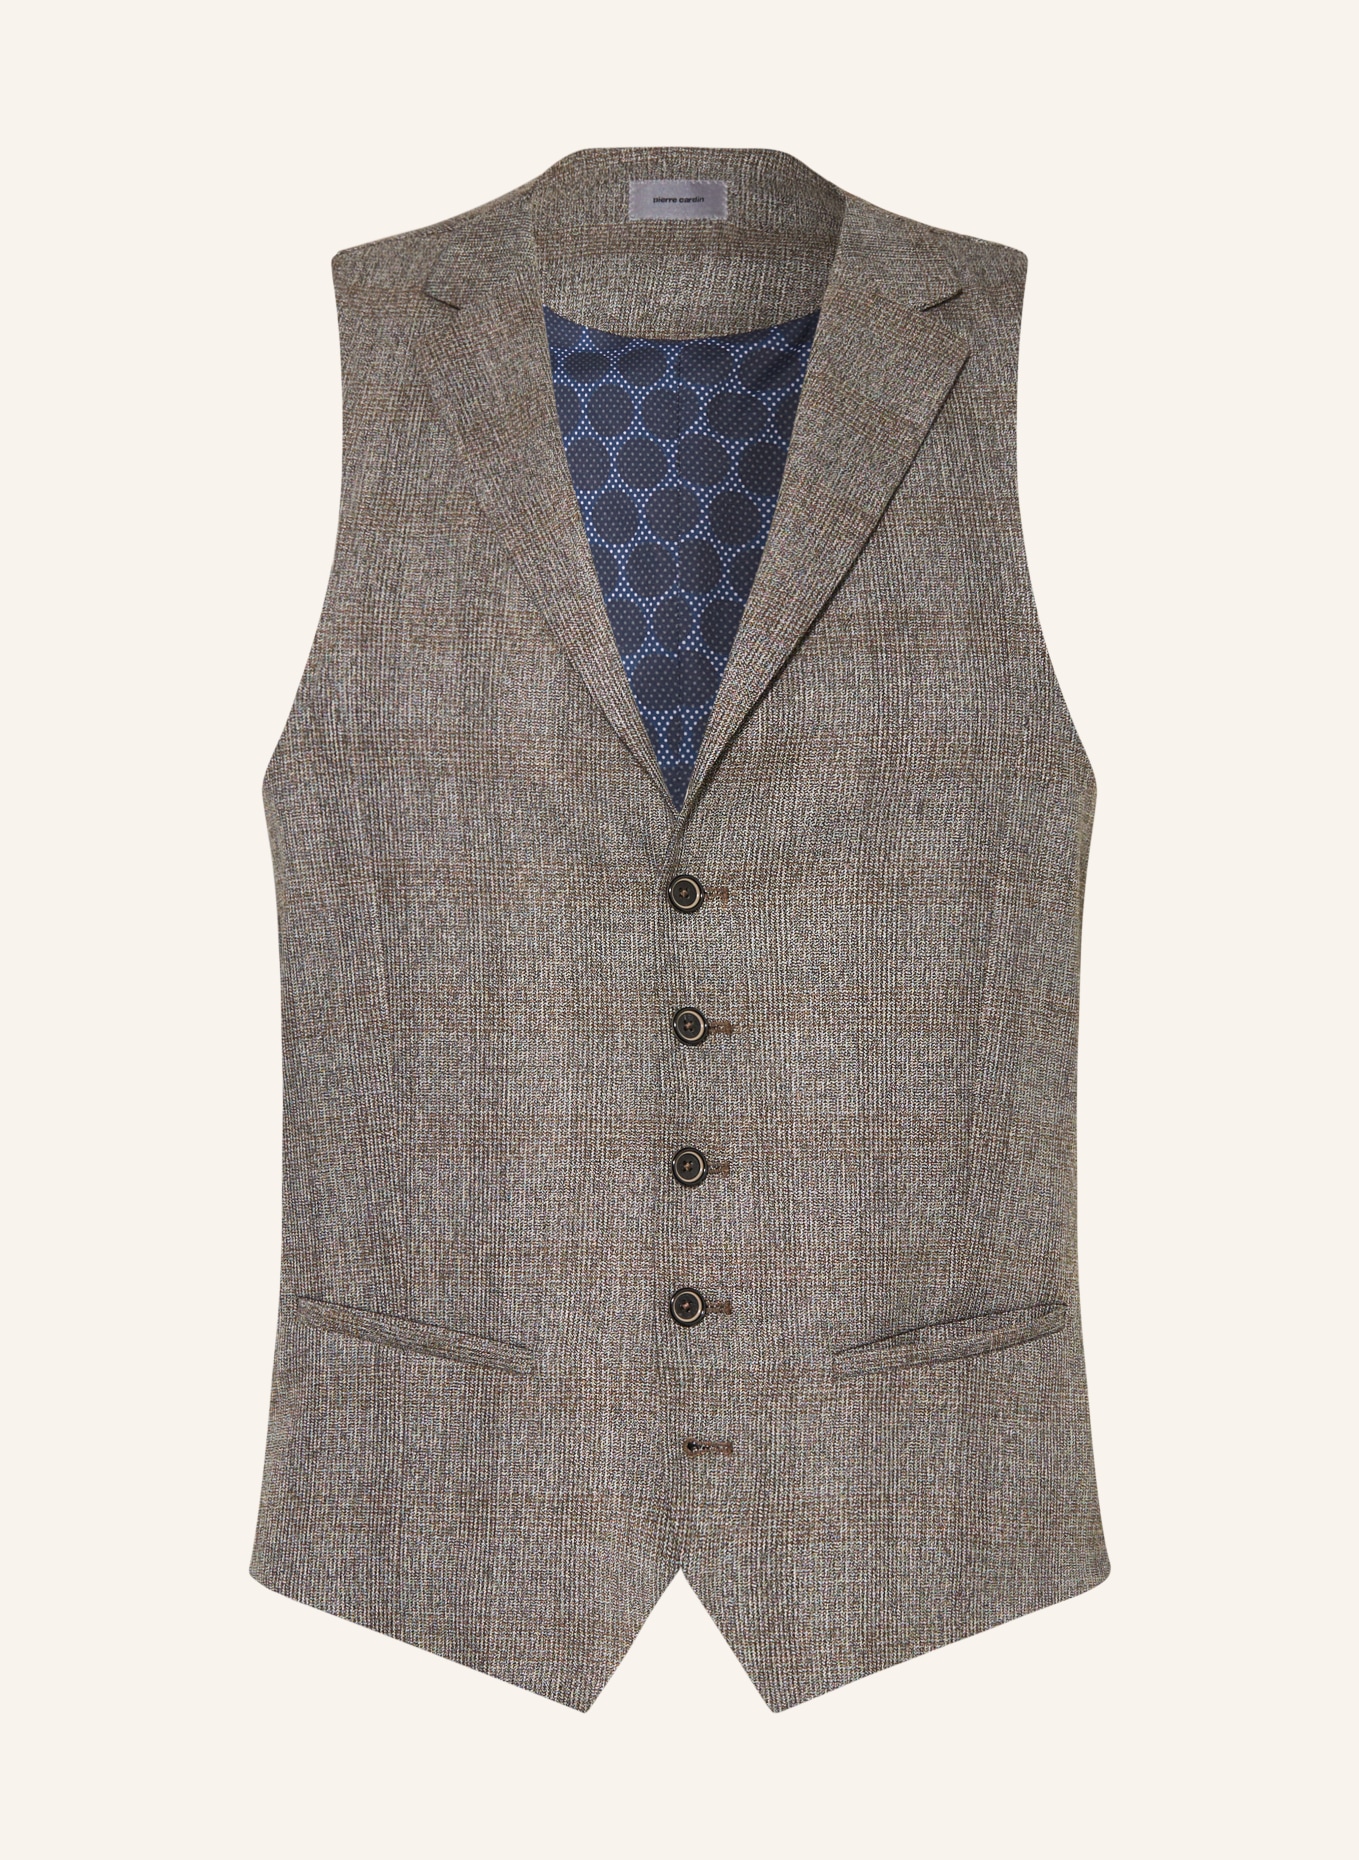 pierre cardin Suit vest SAMUEL regular fit, Color: 1112 Vintage Khaki (Image 1)